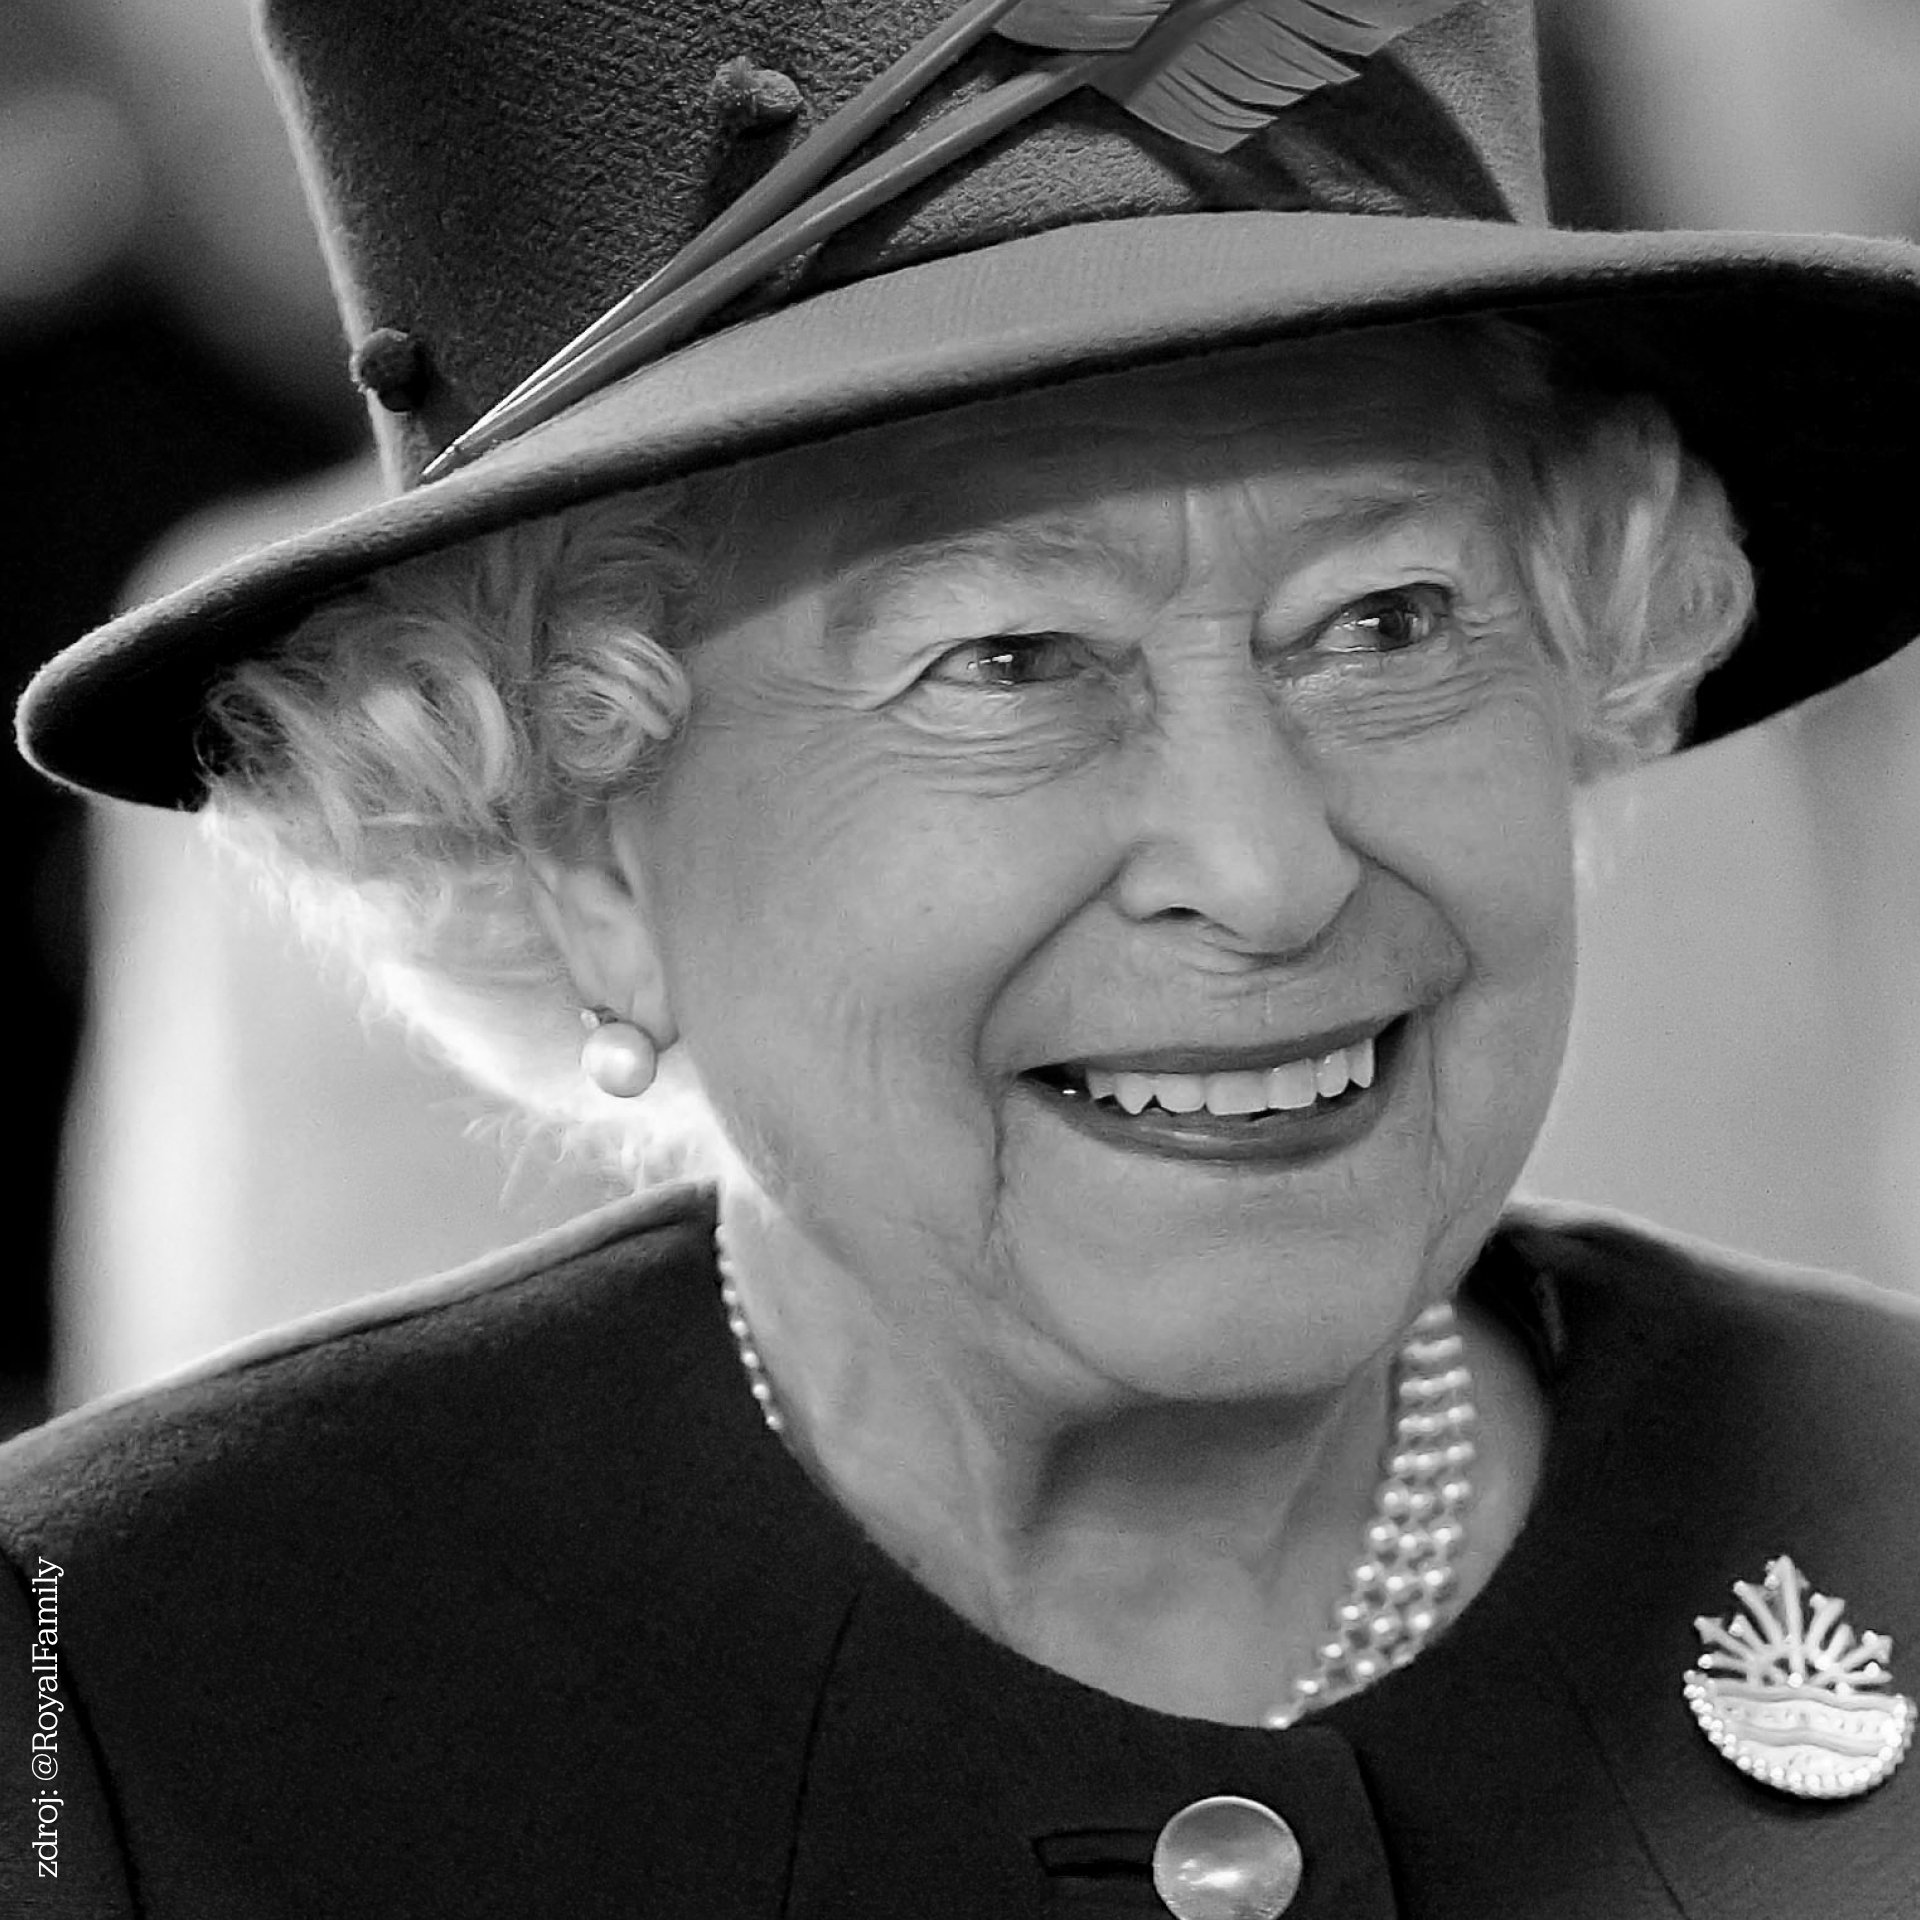 Poslanecký klub ODS kondoluje britské královské rodině